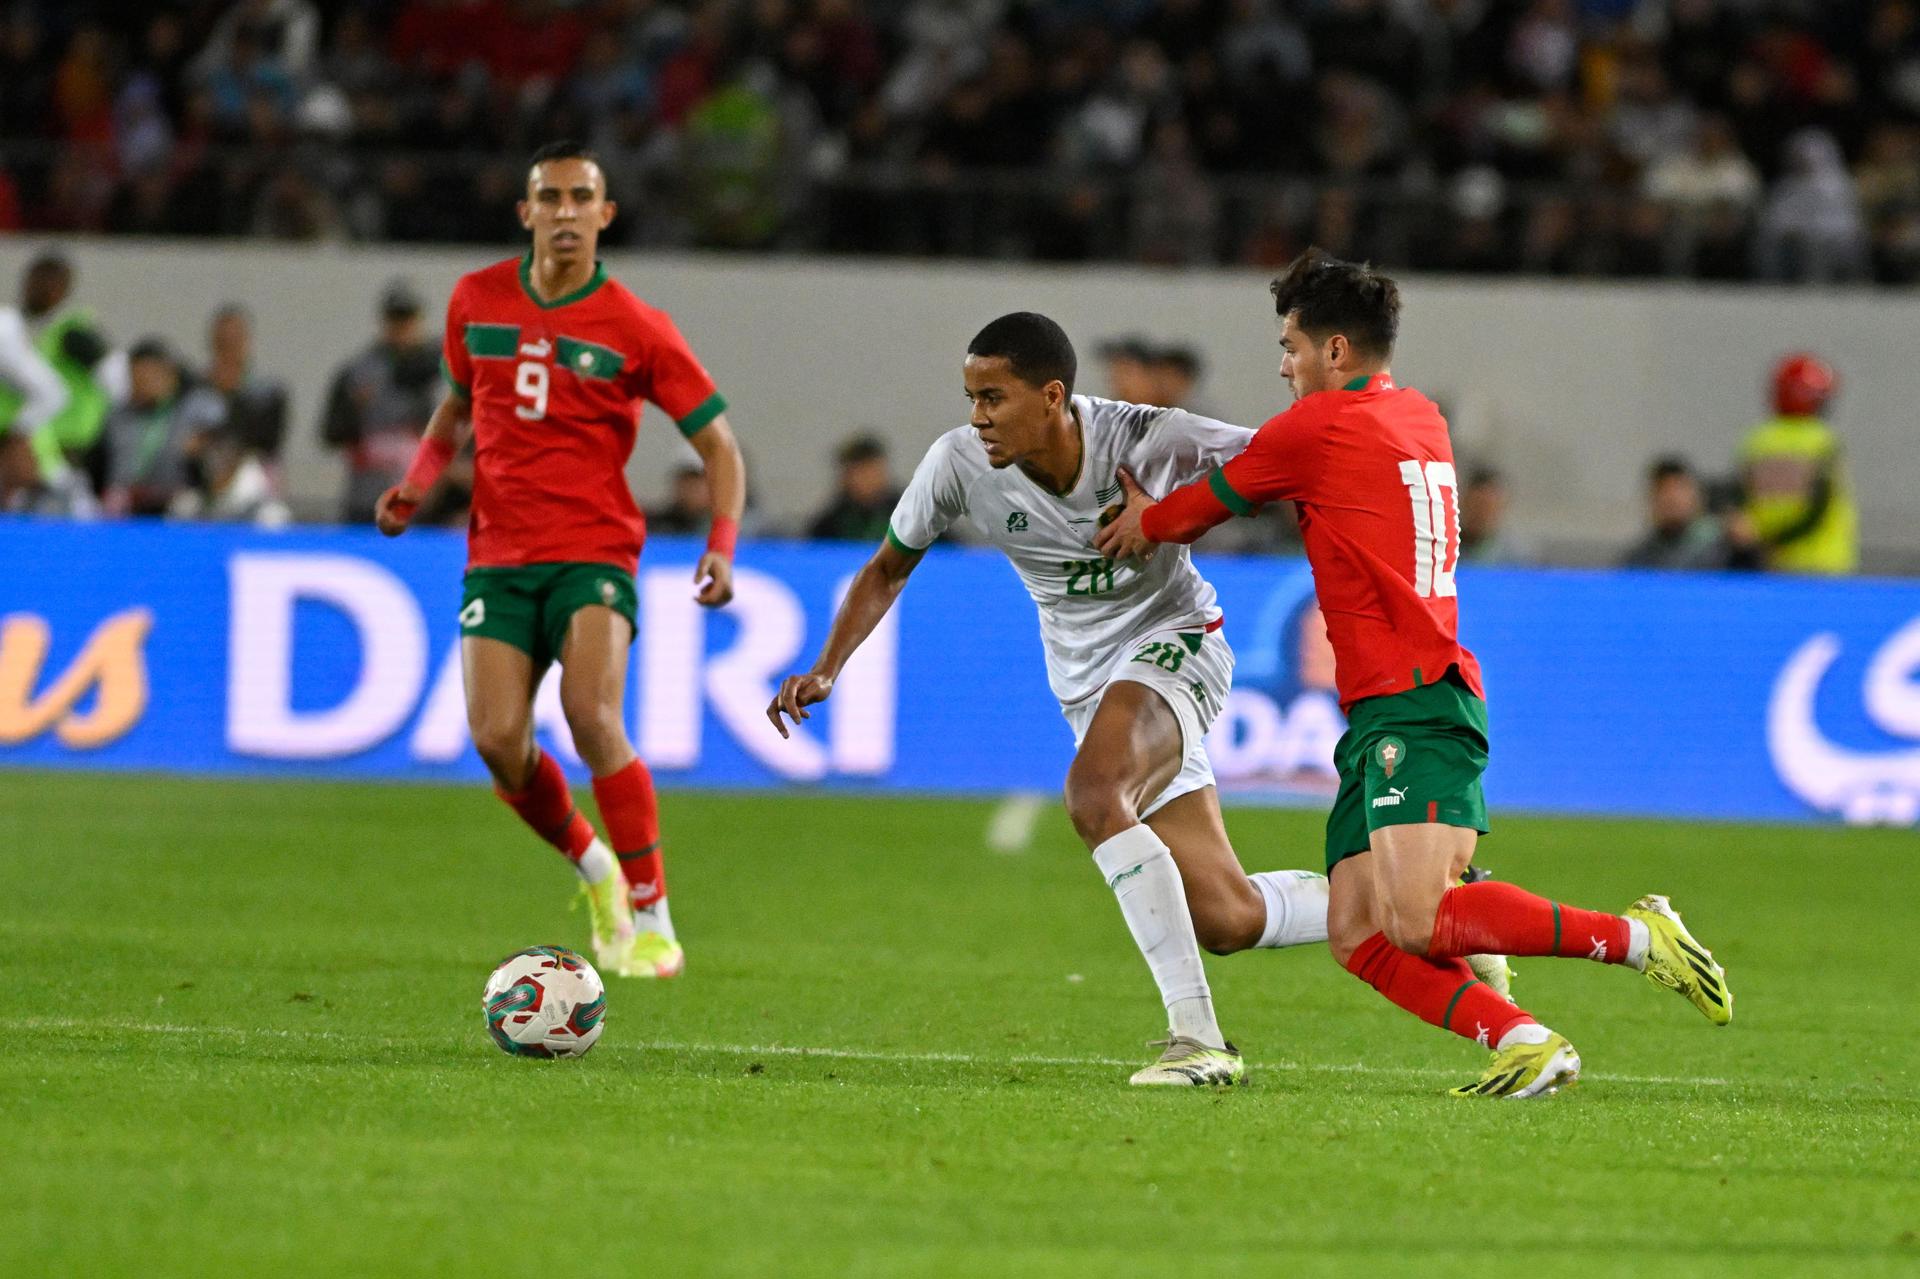 Brahim Díaz (d), de Marruecos, fue registrado este martes, 26 de marzo, al disputar un balón con Omar Ngom (c), de Mauritania, durante un partido amistoso jugado en la ciudad marroquí de Agadir. EFE/EPA/Jalal Morchidi